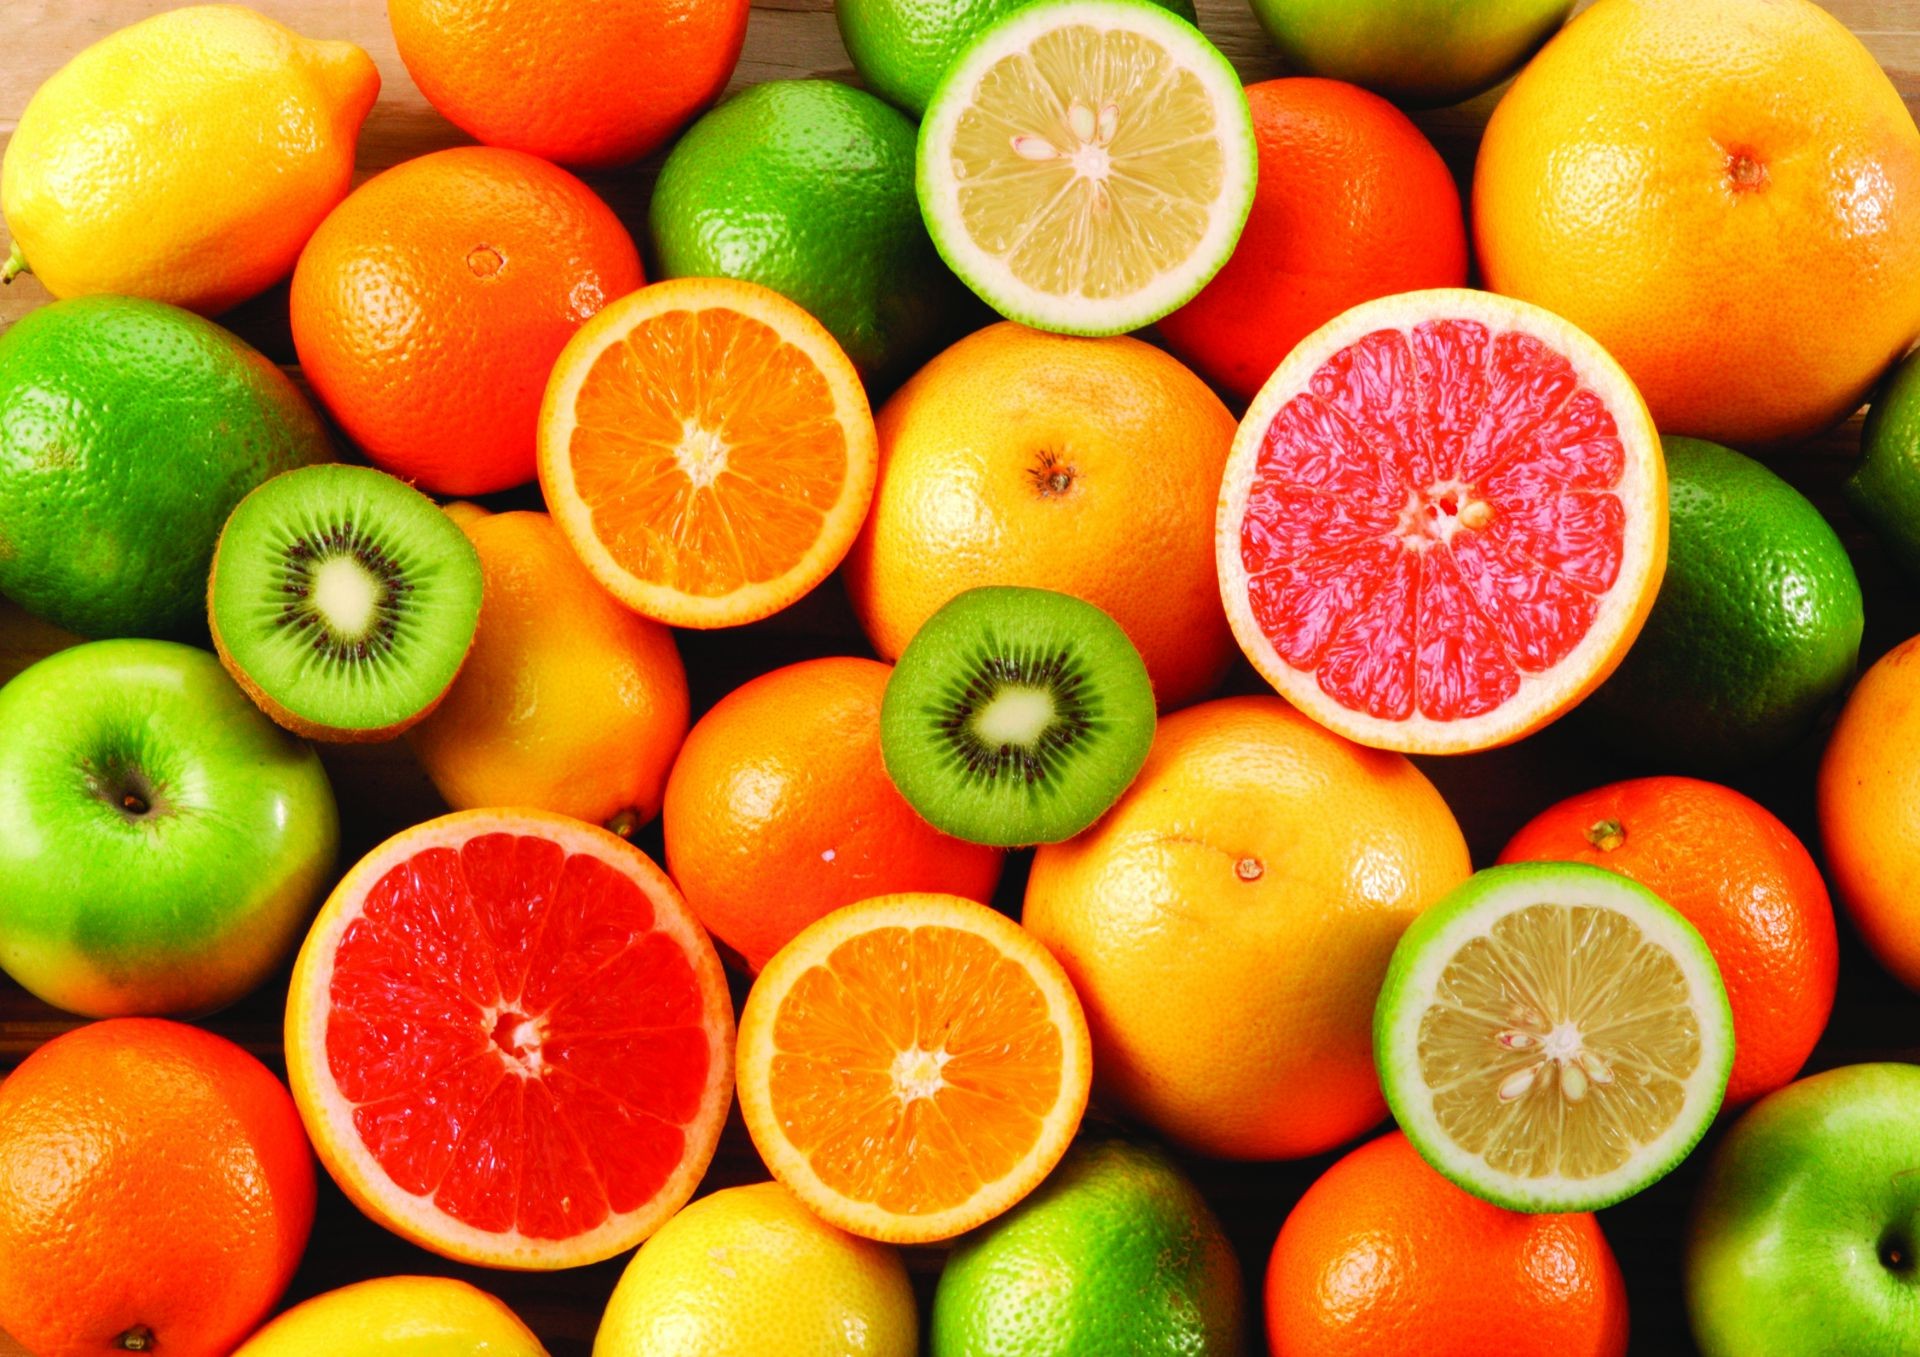 фрукты цитрусовые сочные лимон еда извести грейпфрут мандарин сок кондитерское изделие здоровья здоровый тропический мандариновый рынок свежесть диета яблоко питание